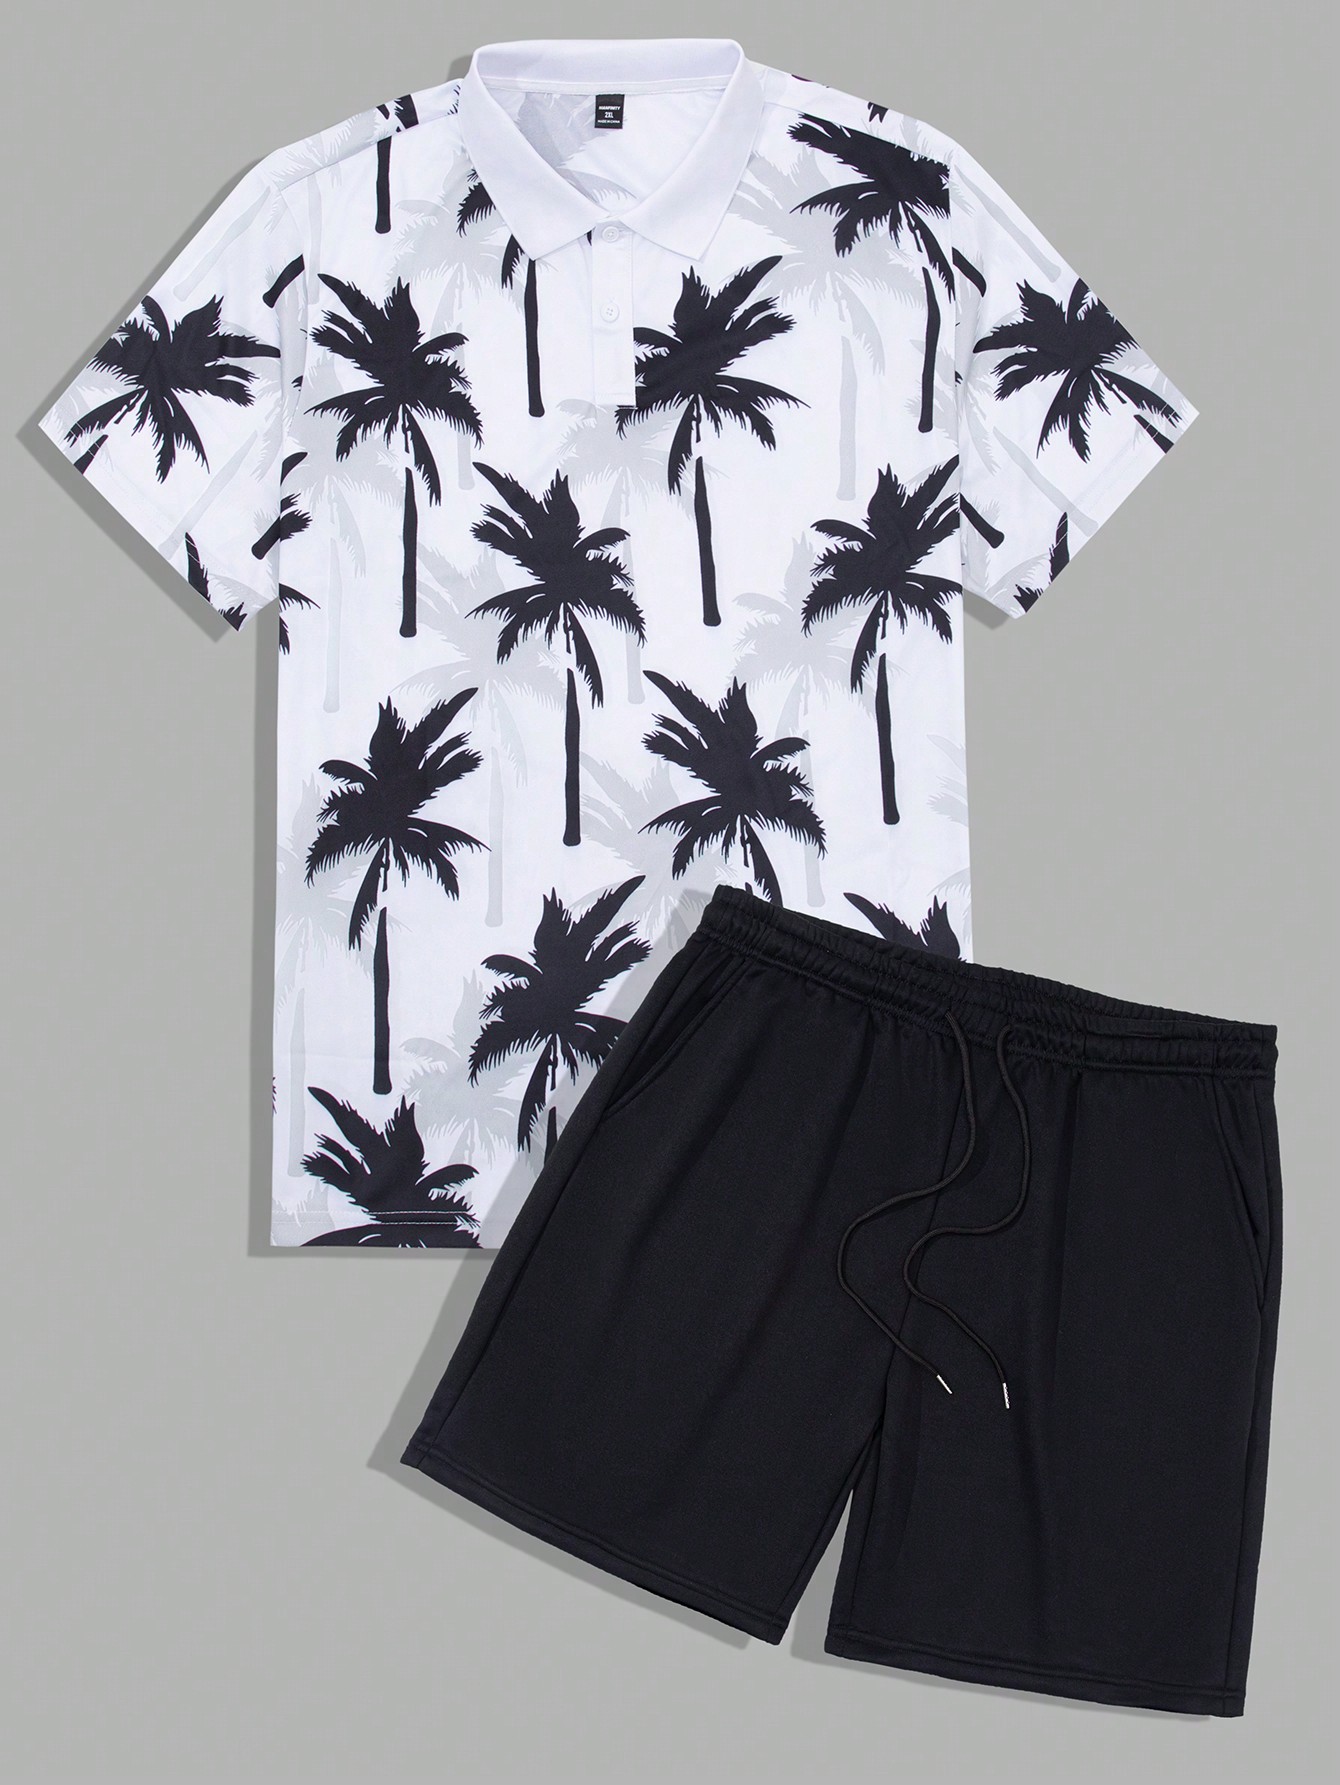 Manfinity RSRT Мужская рубашка поло и шорты с короткими рукавами и пуговицами больших размеров с принтом кокосовой пальмы, черное и белое